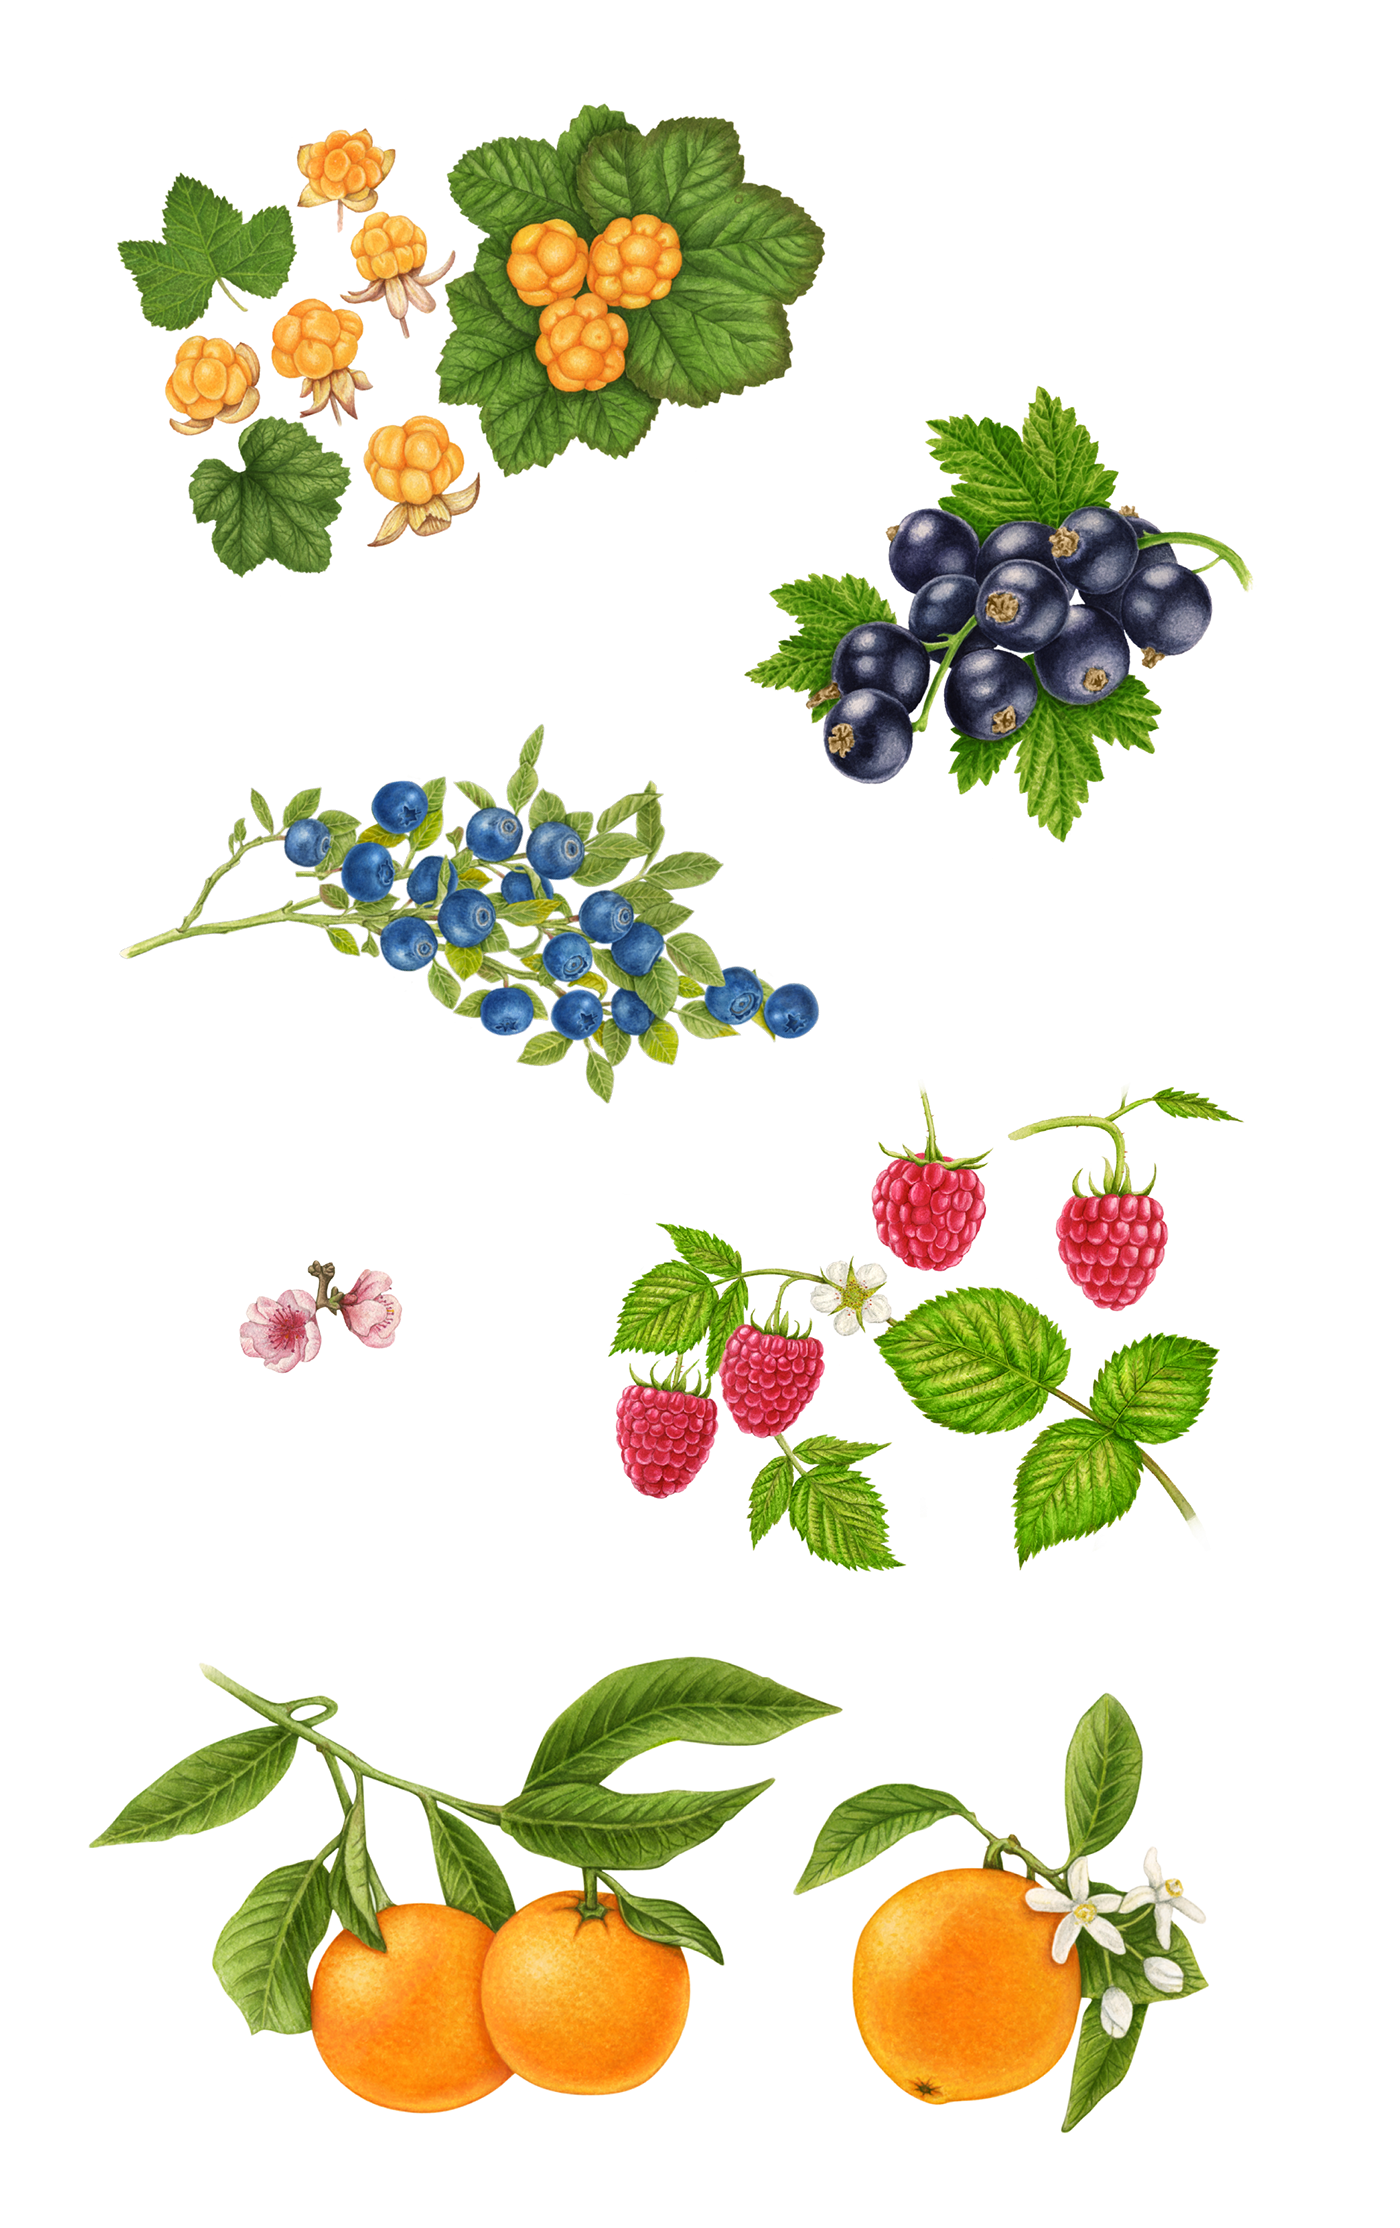 jam fruits berries Conserve packaging design farm nostalgic heimefrå Lerum traditional